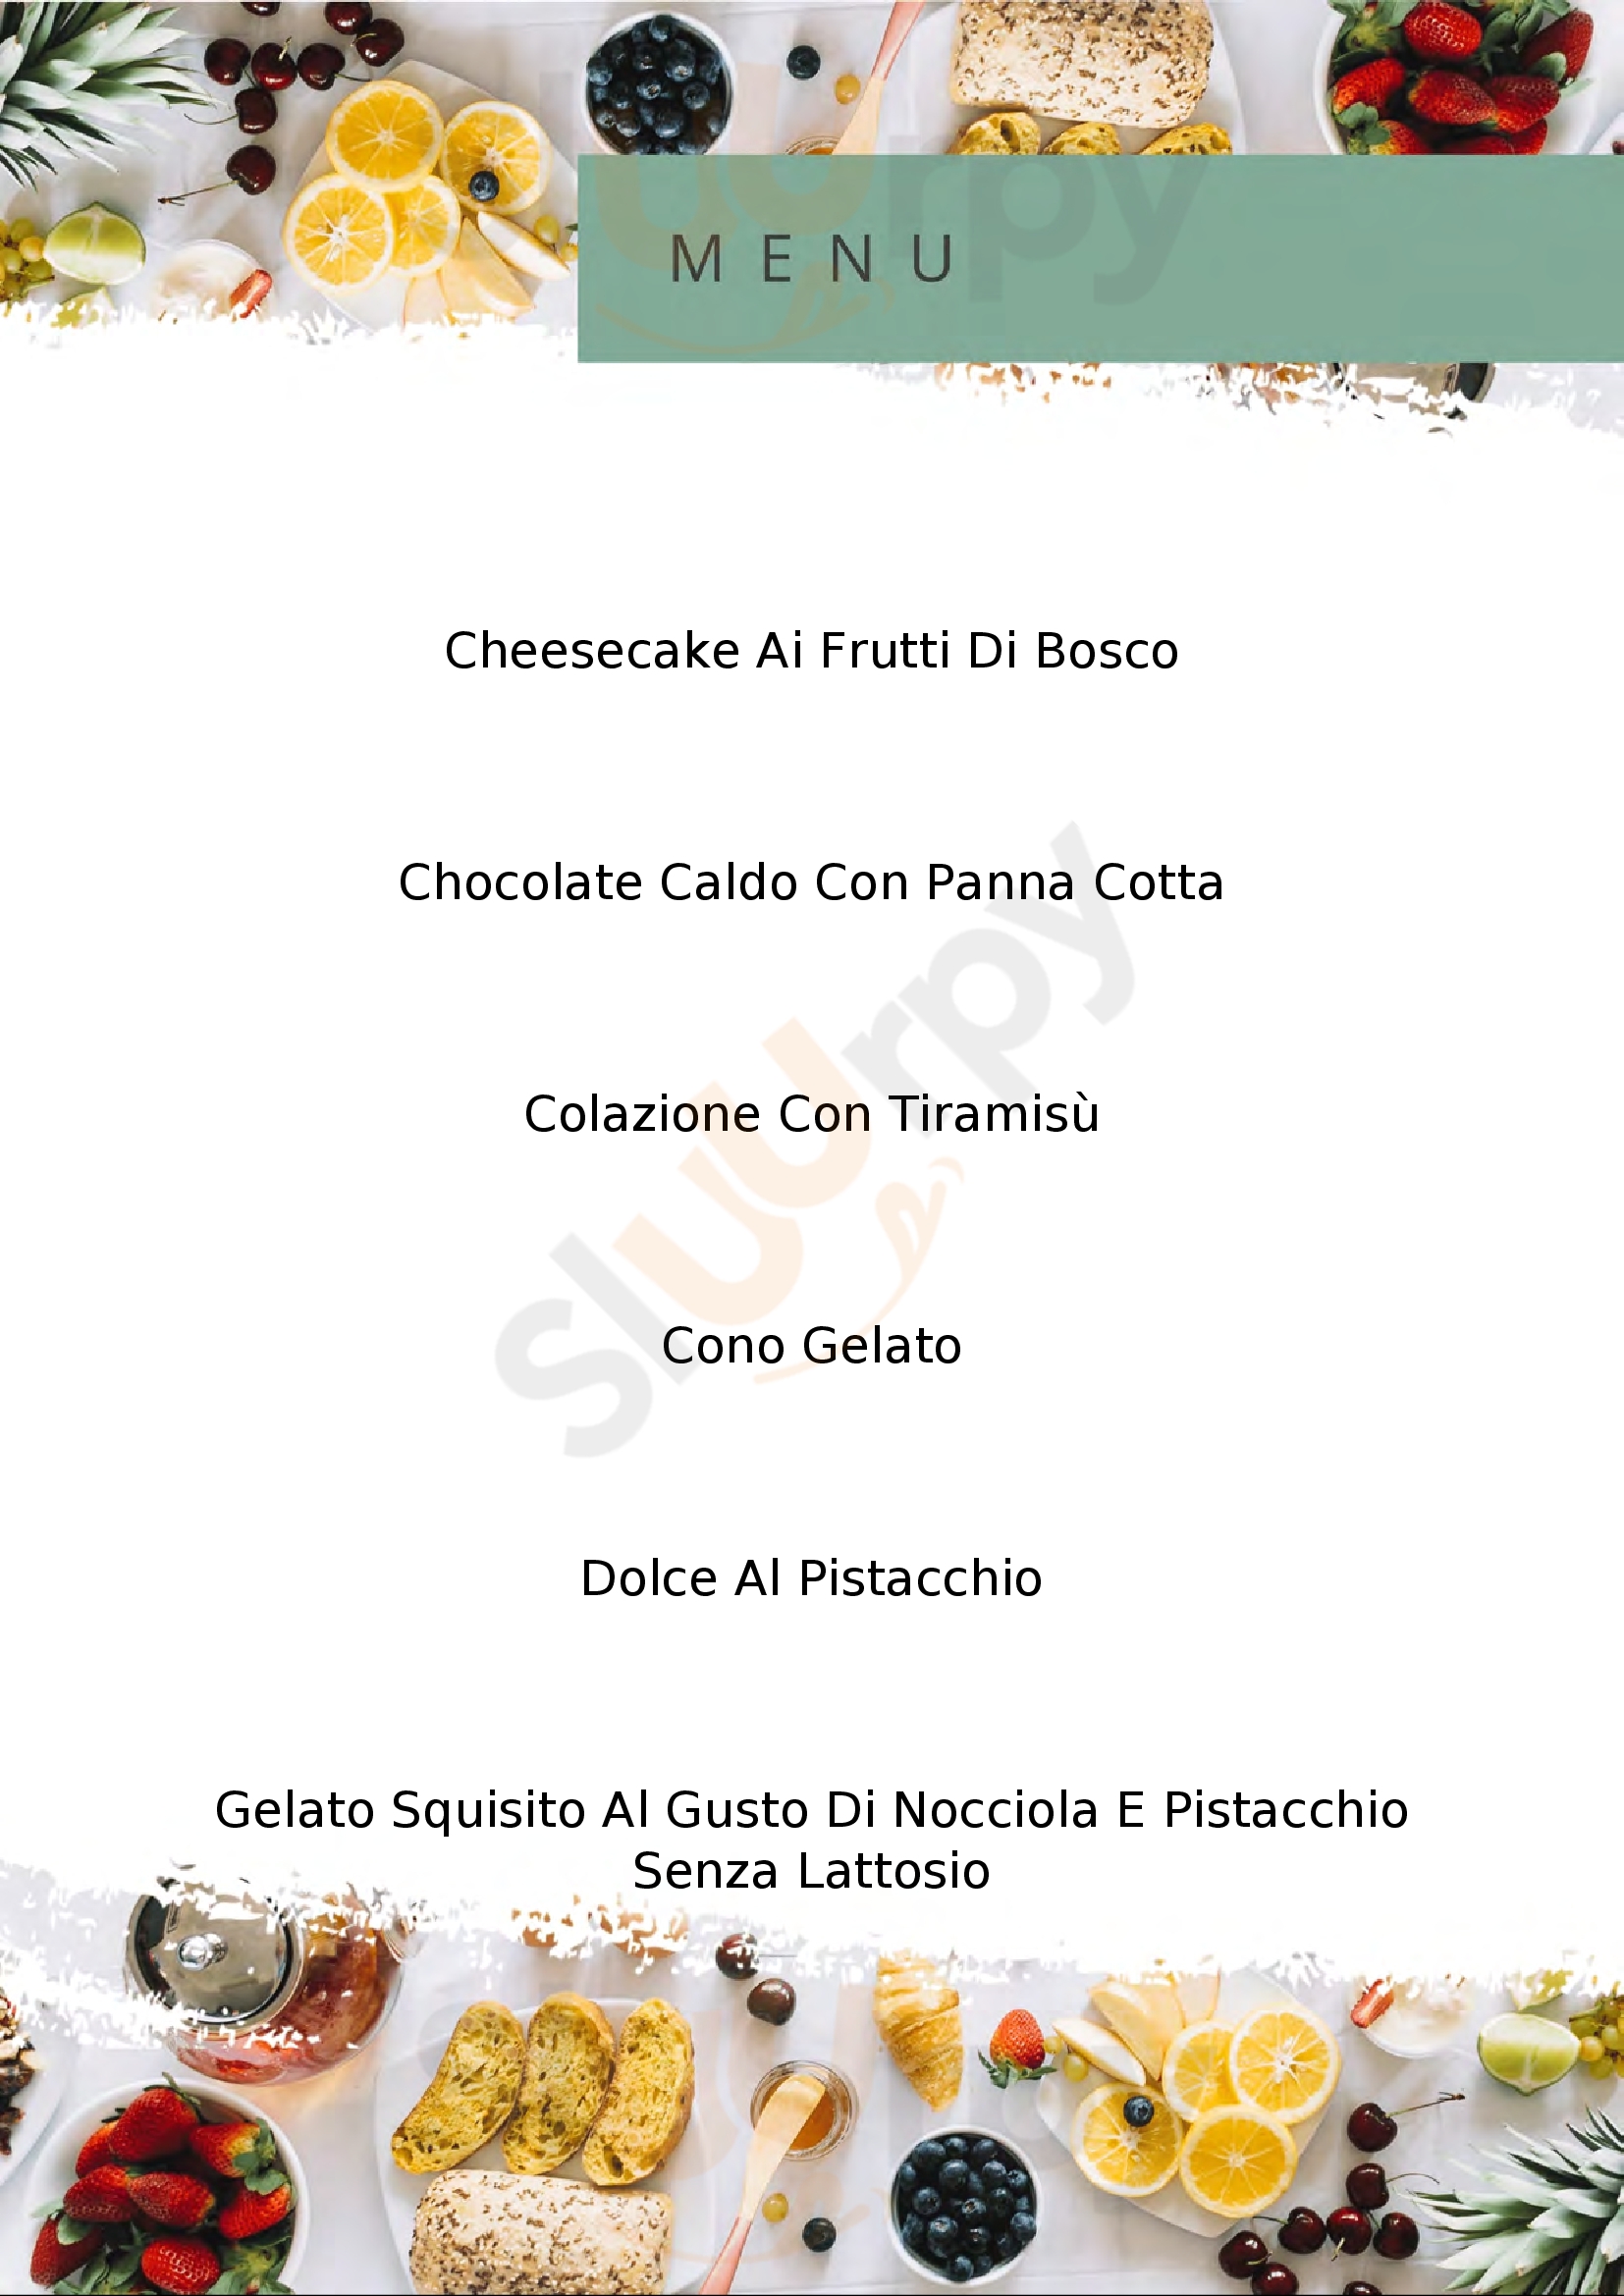 Pasticceria Bar Chocolate Cafe' Carovigno menù 1 pagina